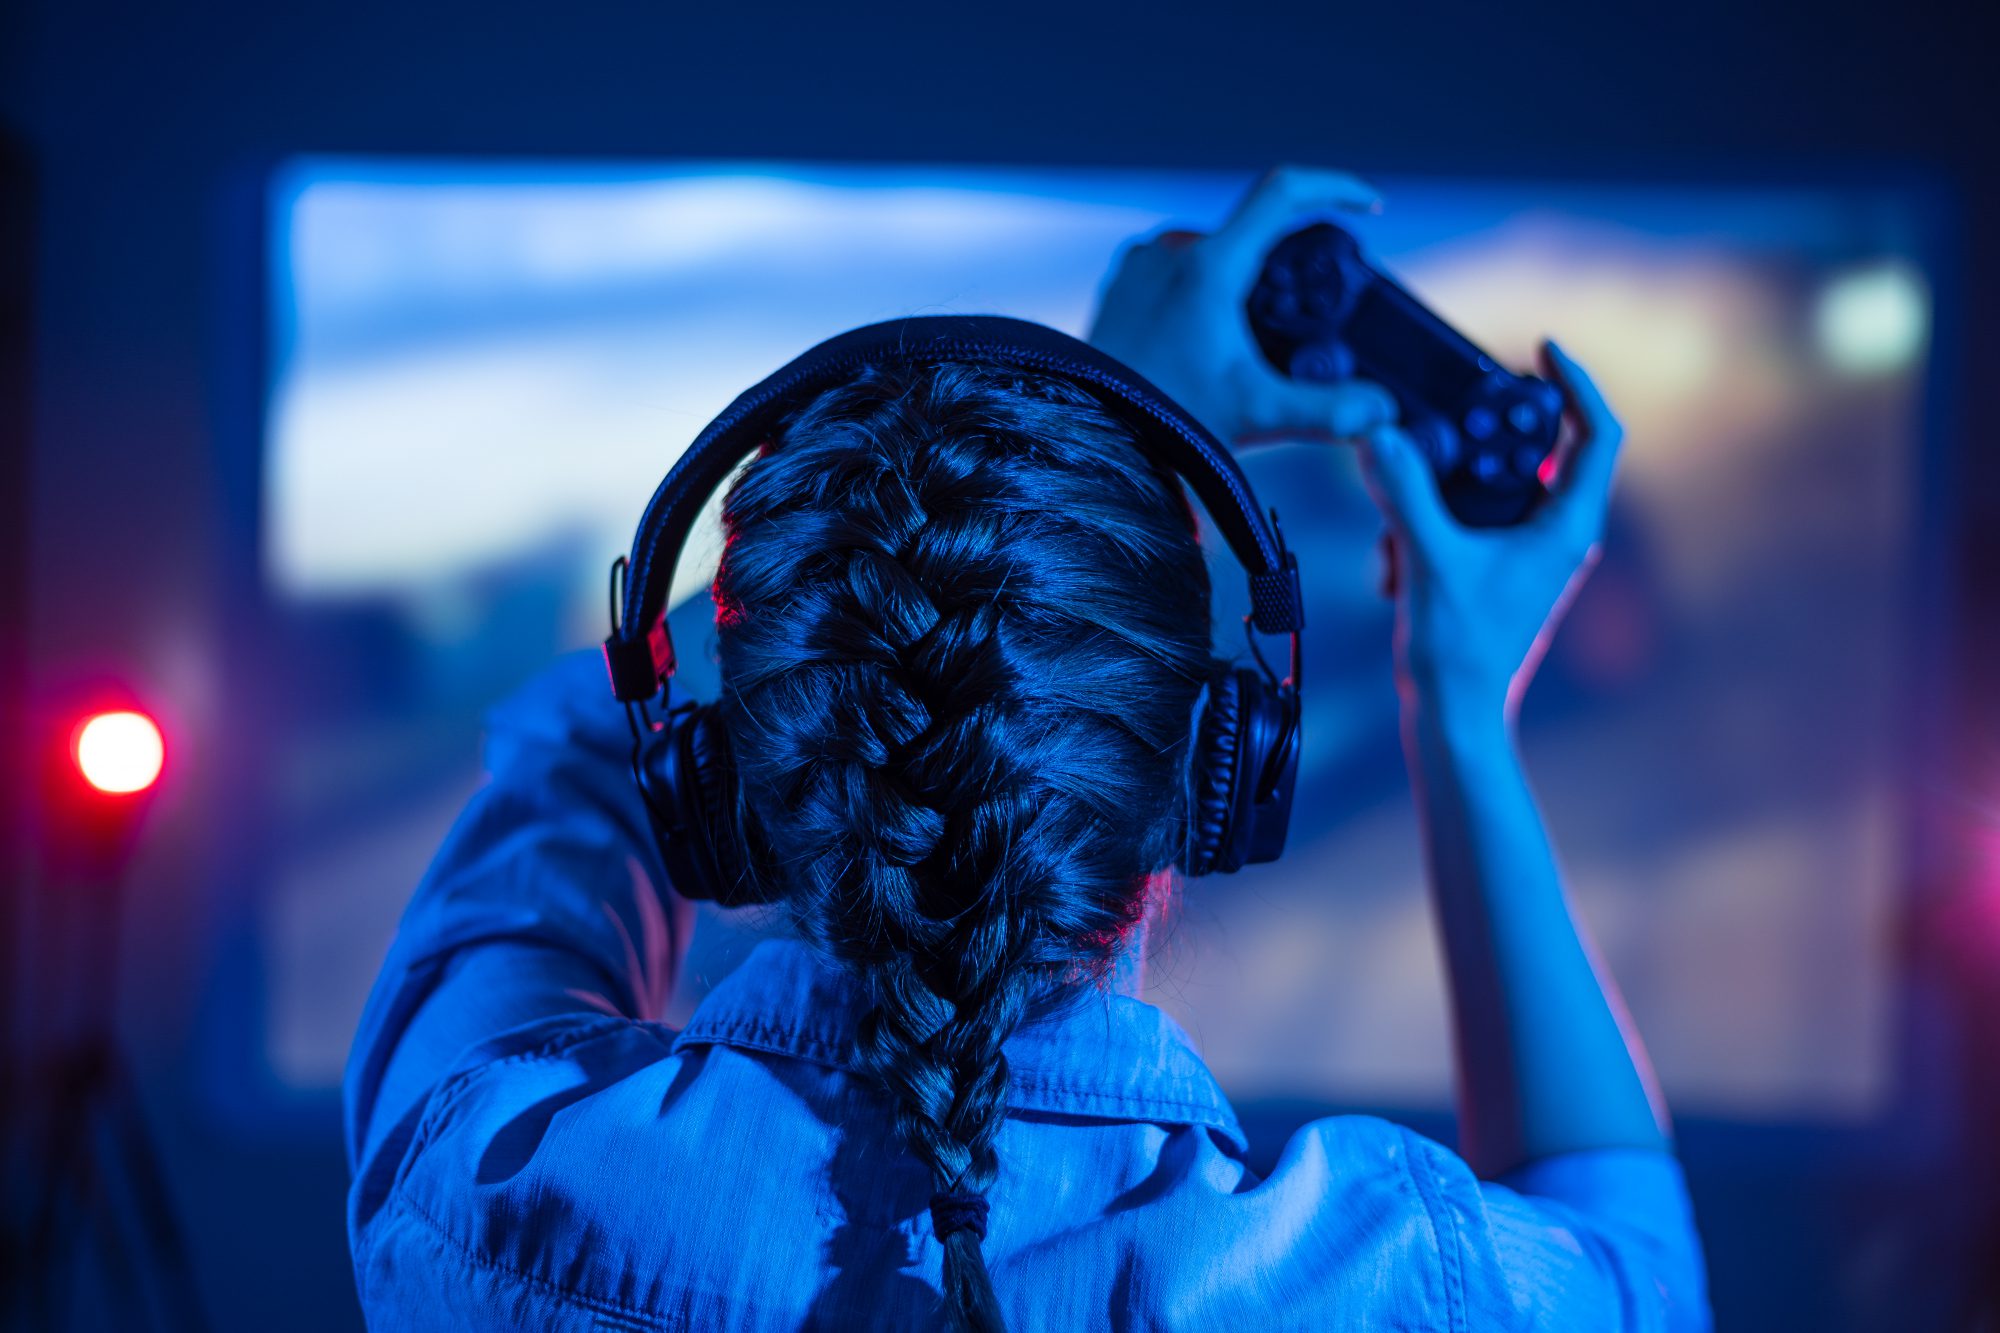 Machismo e discriminação afetam mulheres nos jogos online — A